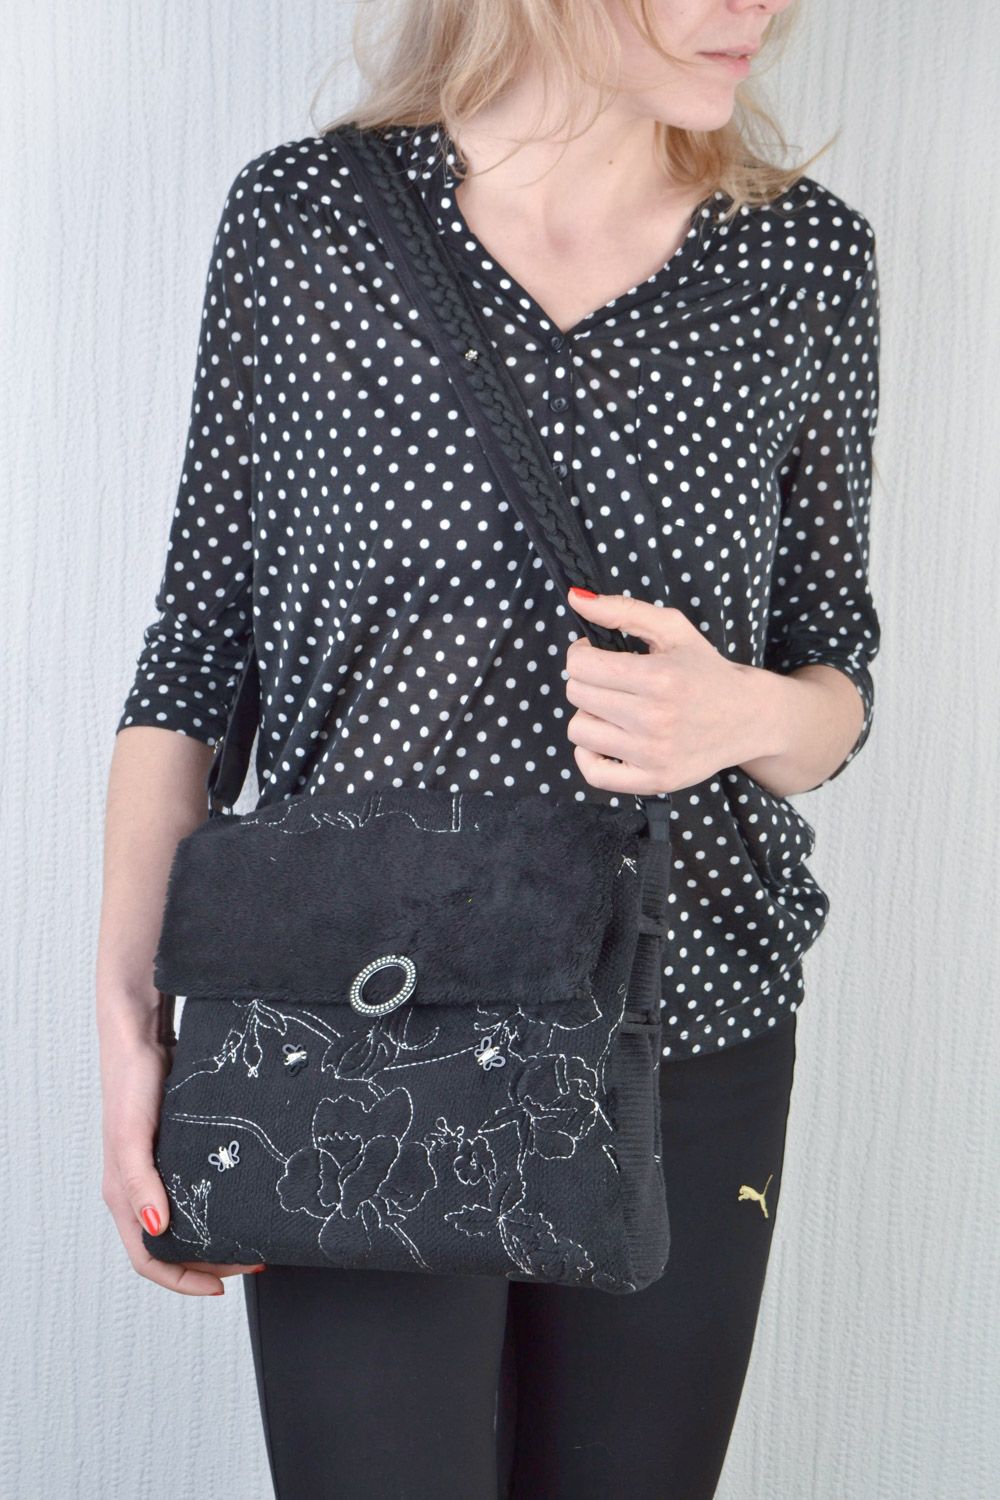 Сумка на длинной ручке черная квадратная из ткани стильная женская ручной работы фото 1